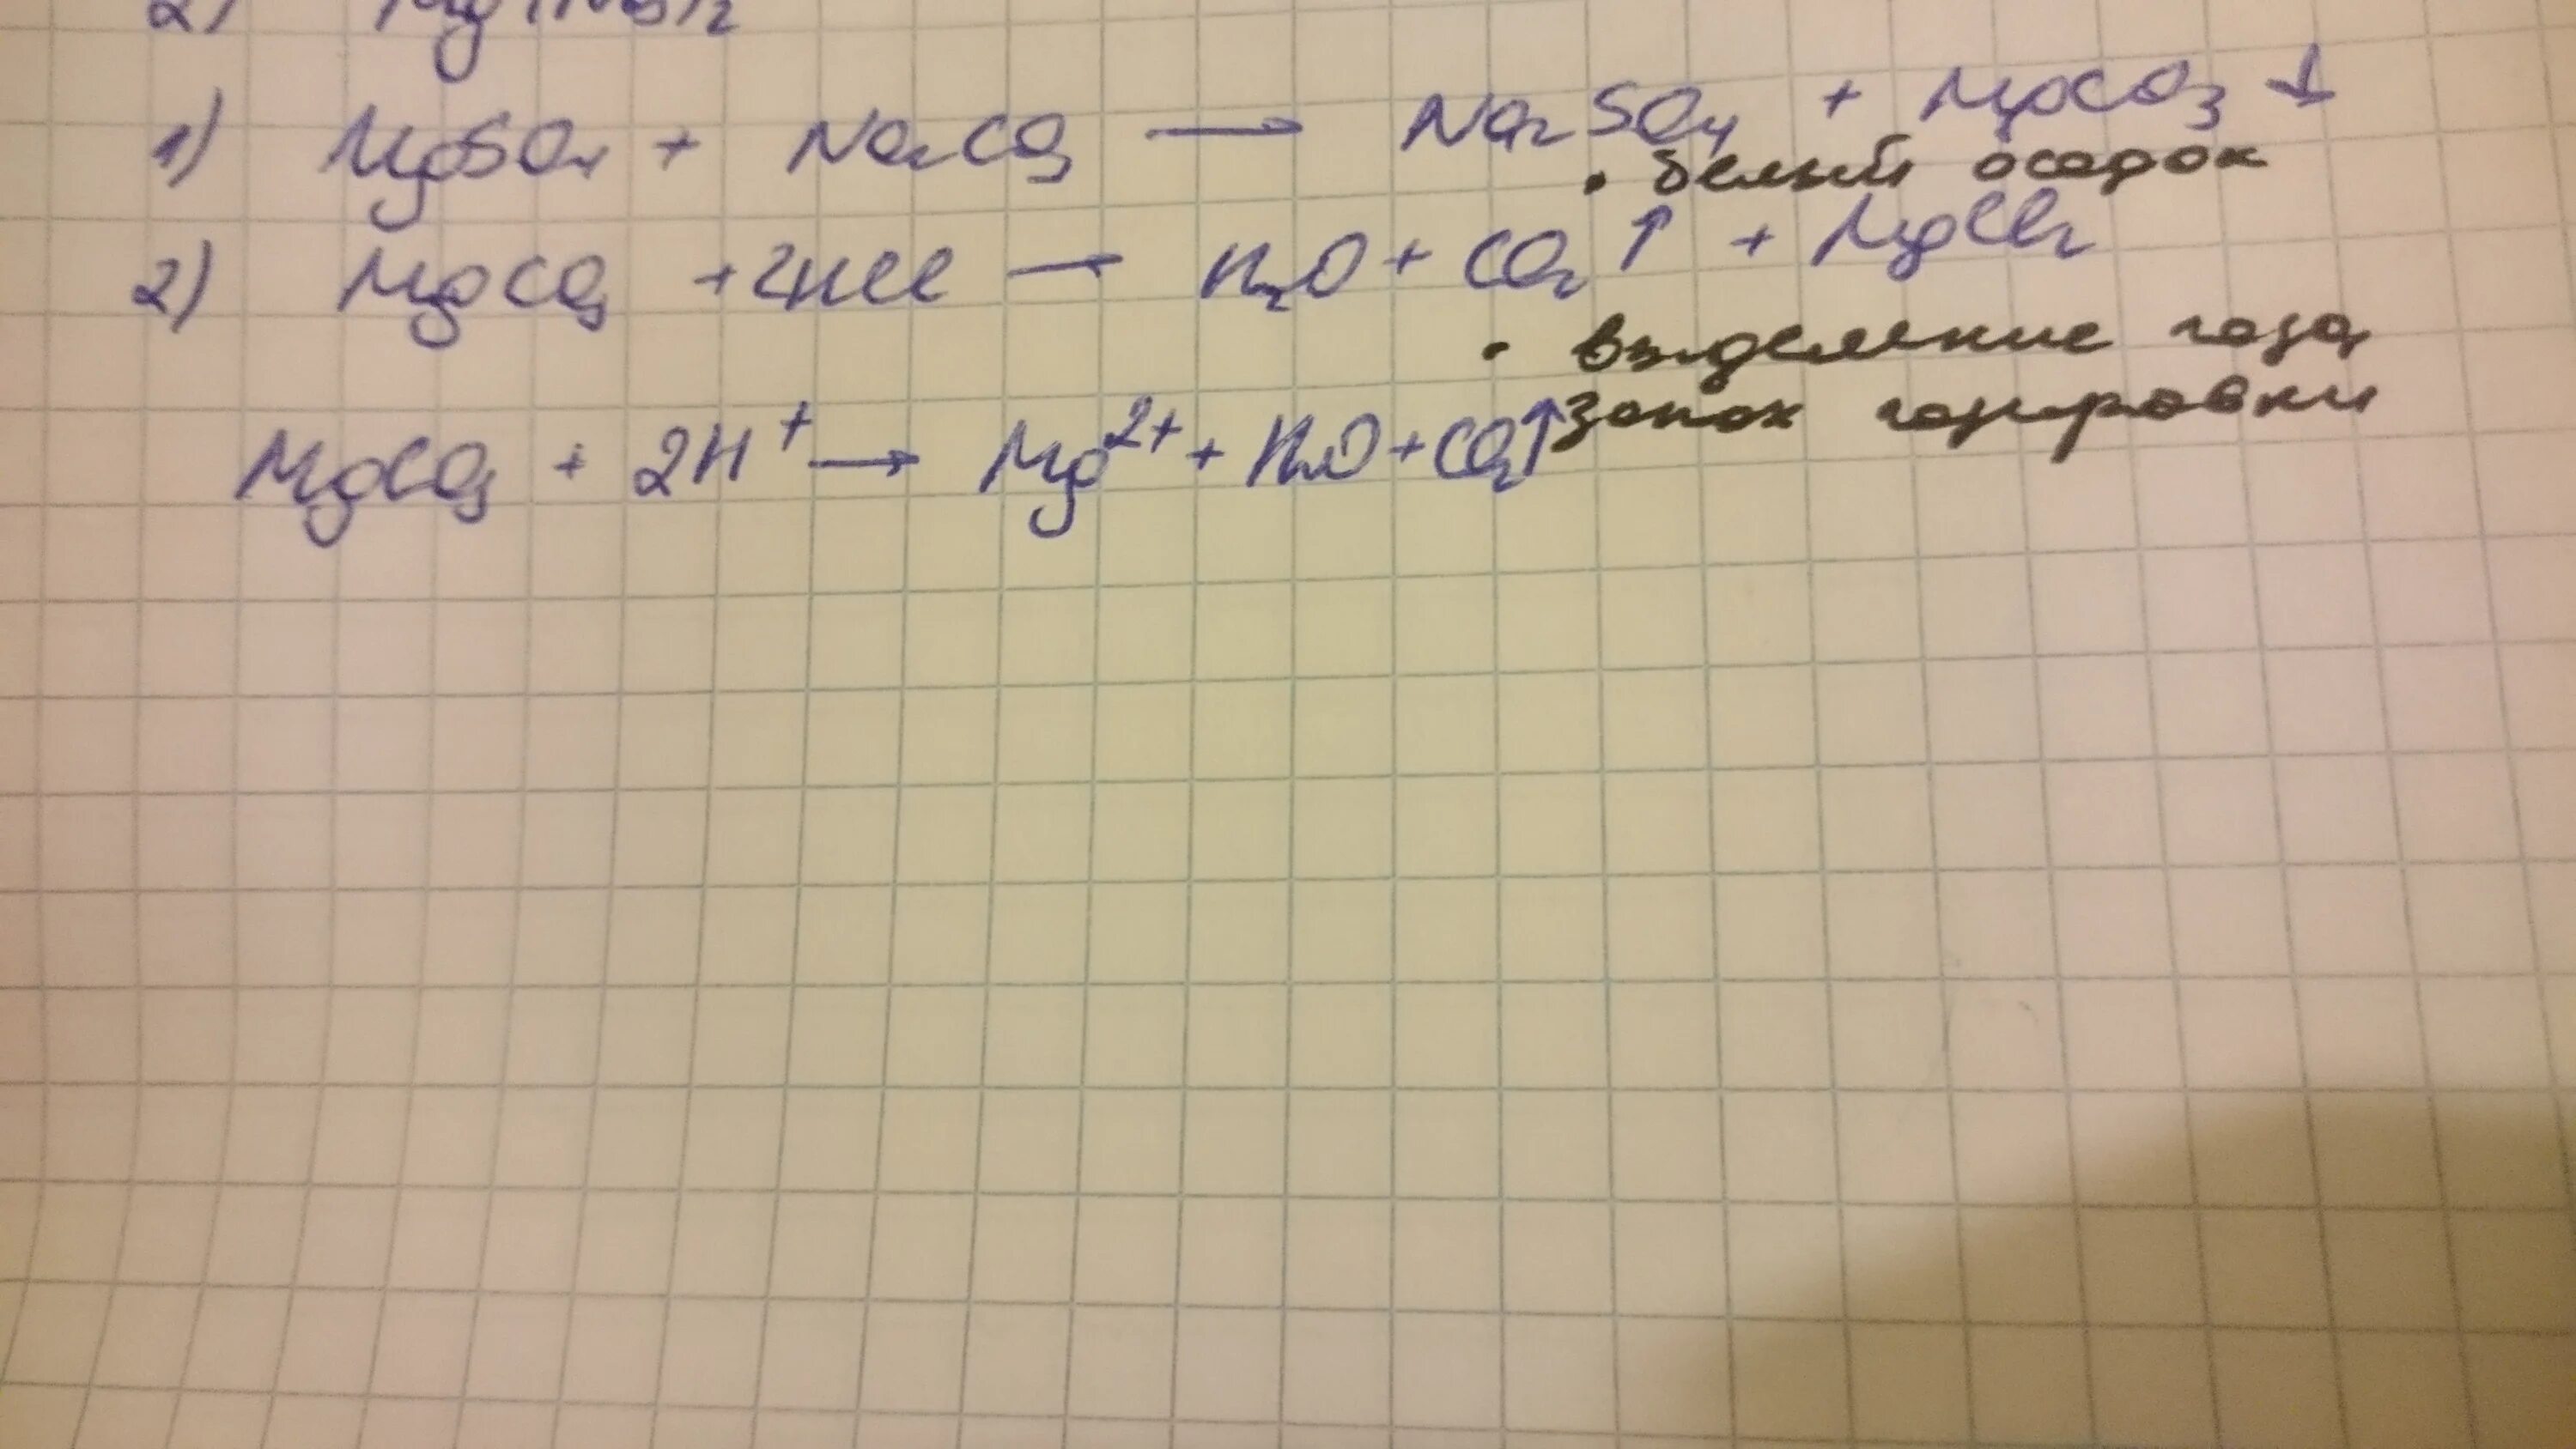 Na2co3 naoh ионное. NACL+mgso4. Реакция HCL mgso4. Mgso4 NACL уравнение. NACL+HCL уравнение реакции.